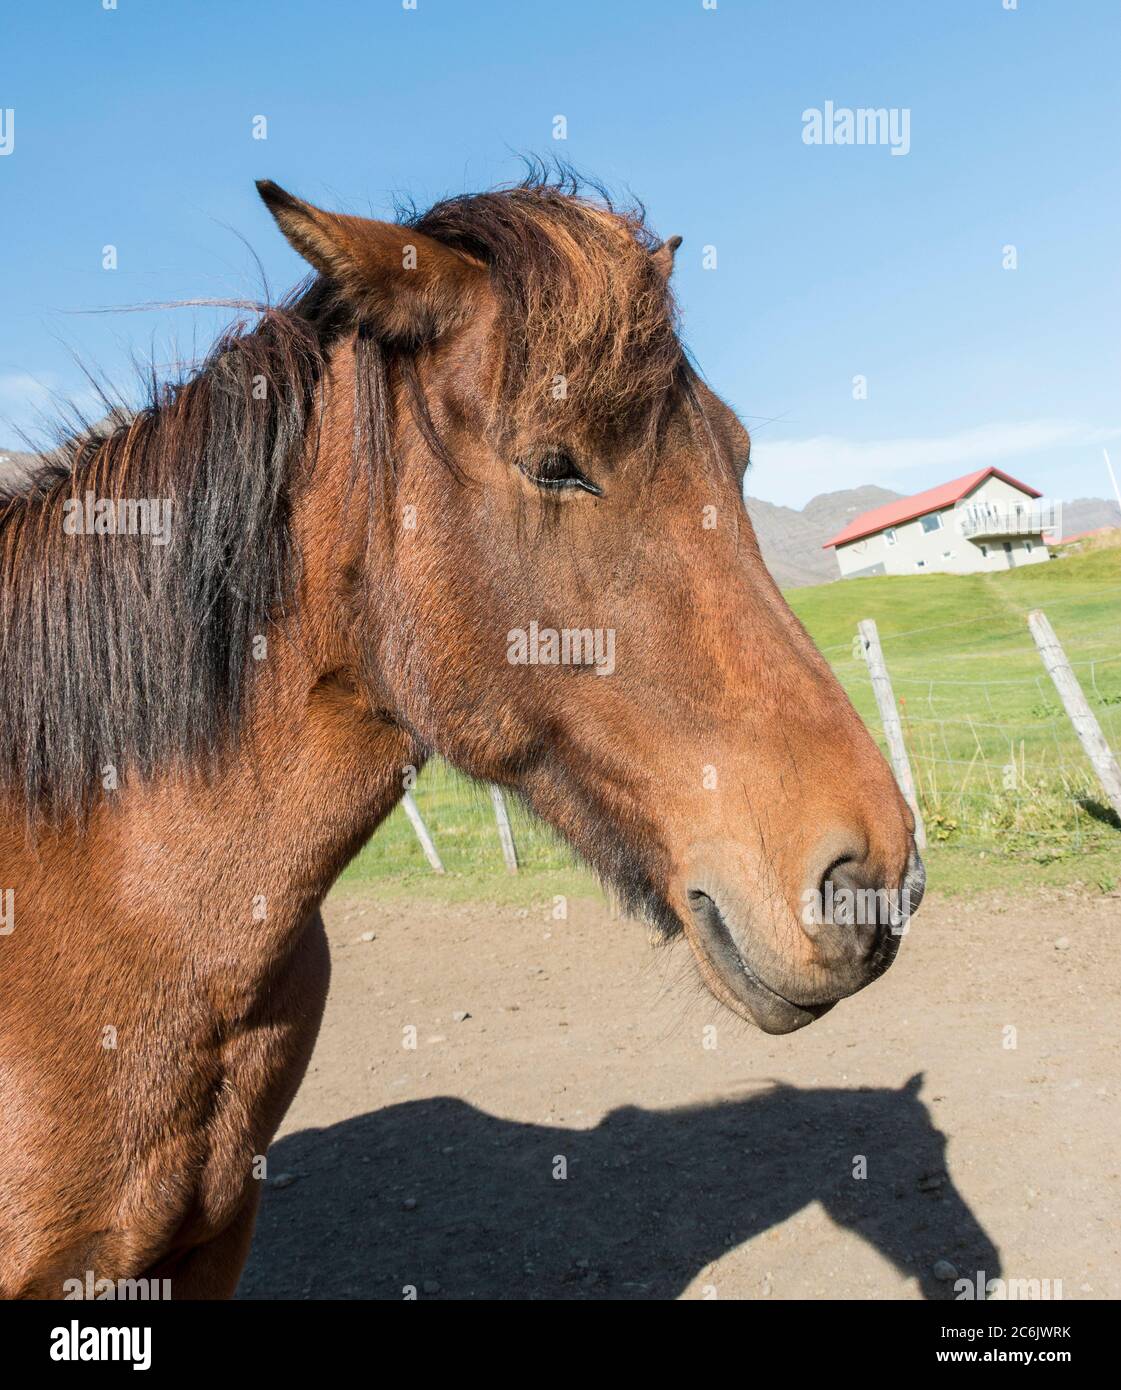 Isländische Pferde sind ein kleines, manchmal Pony-großes Pferd, das in Island aus Ponys entwickelt wurde, die von skandinavischen Siedlern im 9. Und 10. Jahrhundert importiert wurden. Sie sind robust, winterhart und langlebig. Sie sind bekannt für einen unverwechselbaren Gang namens „Tolt“, ein vierbeulter Laufgang, der flüssige, rhythmische Vorwärtsbewegungen erzeugt und sich beim Fahren wunderbar bequem macht. Hier sind die Pferde auf einem Bauernhof im Osten Islands. Stockfoto